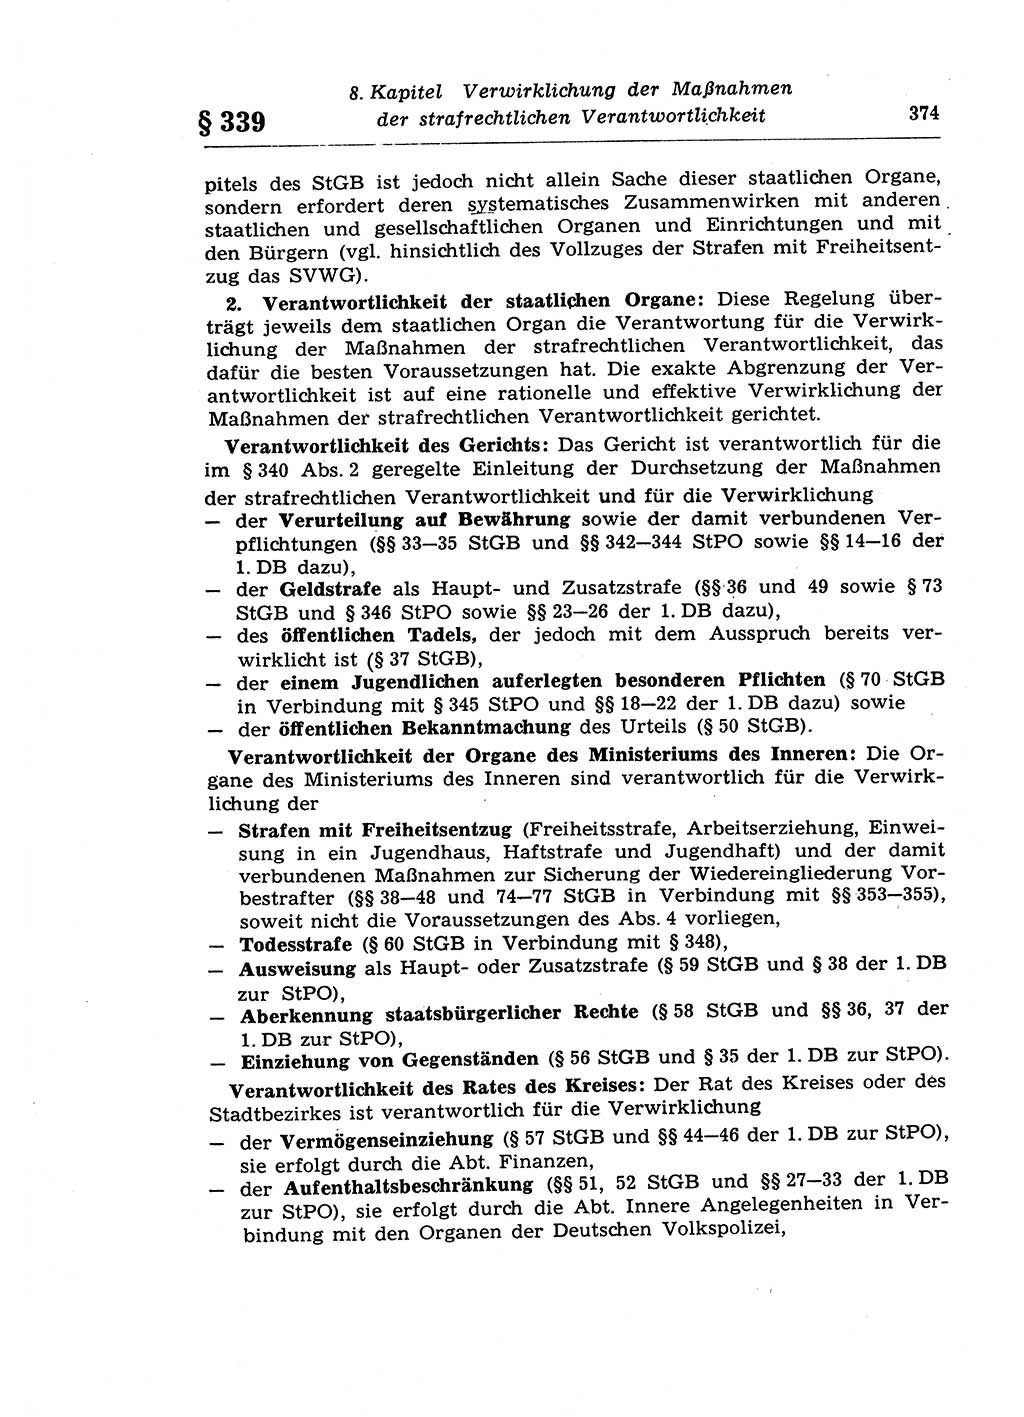 Strafprozeßrecht der DDR (Deutsche Demokratische Republik), Lehrkommentar zur Strafprozeßordnung (StPO) 1968, Seite 374 (Strafprozeßr. DDR Lehrkomm. StPO 19688, S. 374)